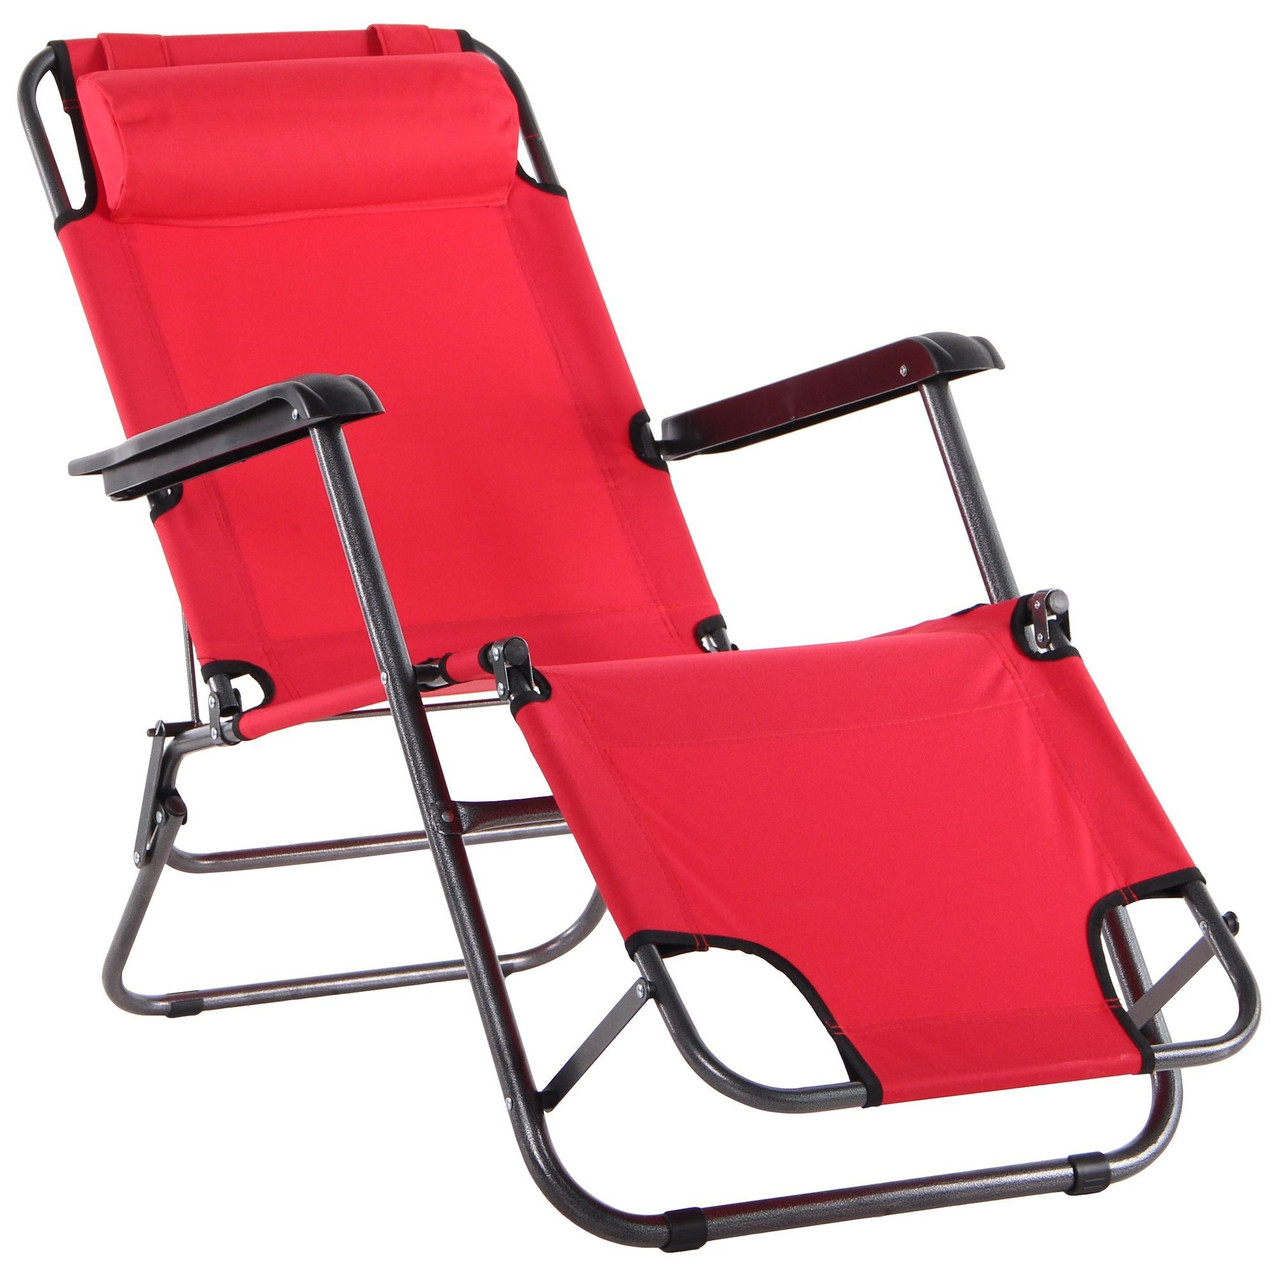 Шезлонг крісло розкладачка 3 в 1 з підлокітниками з текстиля для засмаги, відпочинку Круїз чорний/червоний TM AMF